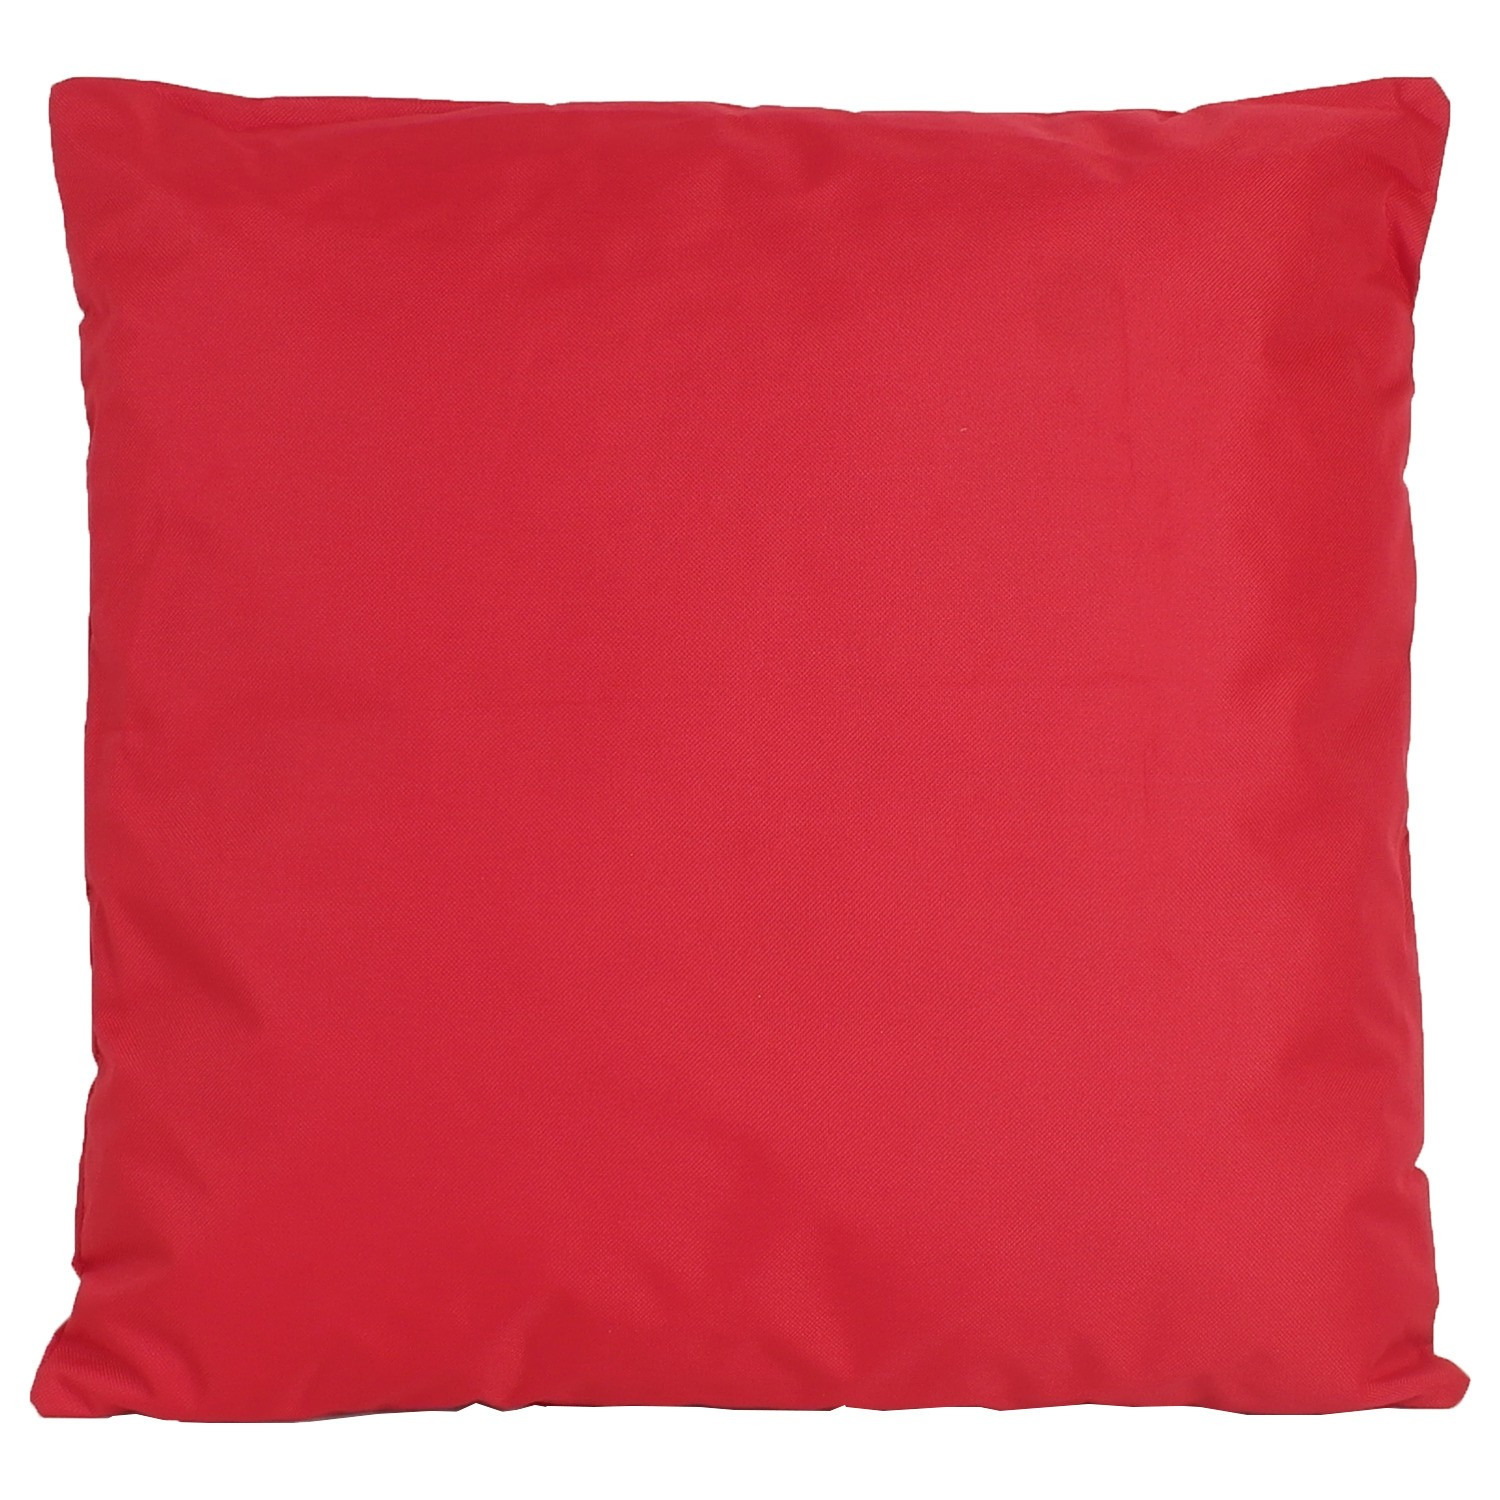 1x Buiten-woonkamer-slaapkamer kussens in het rood 45 x 45 cm